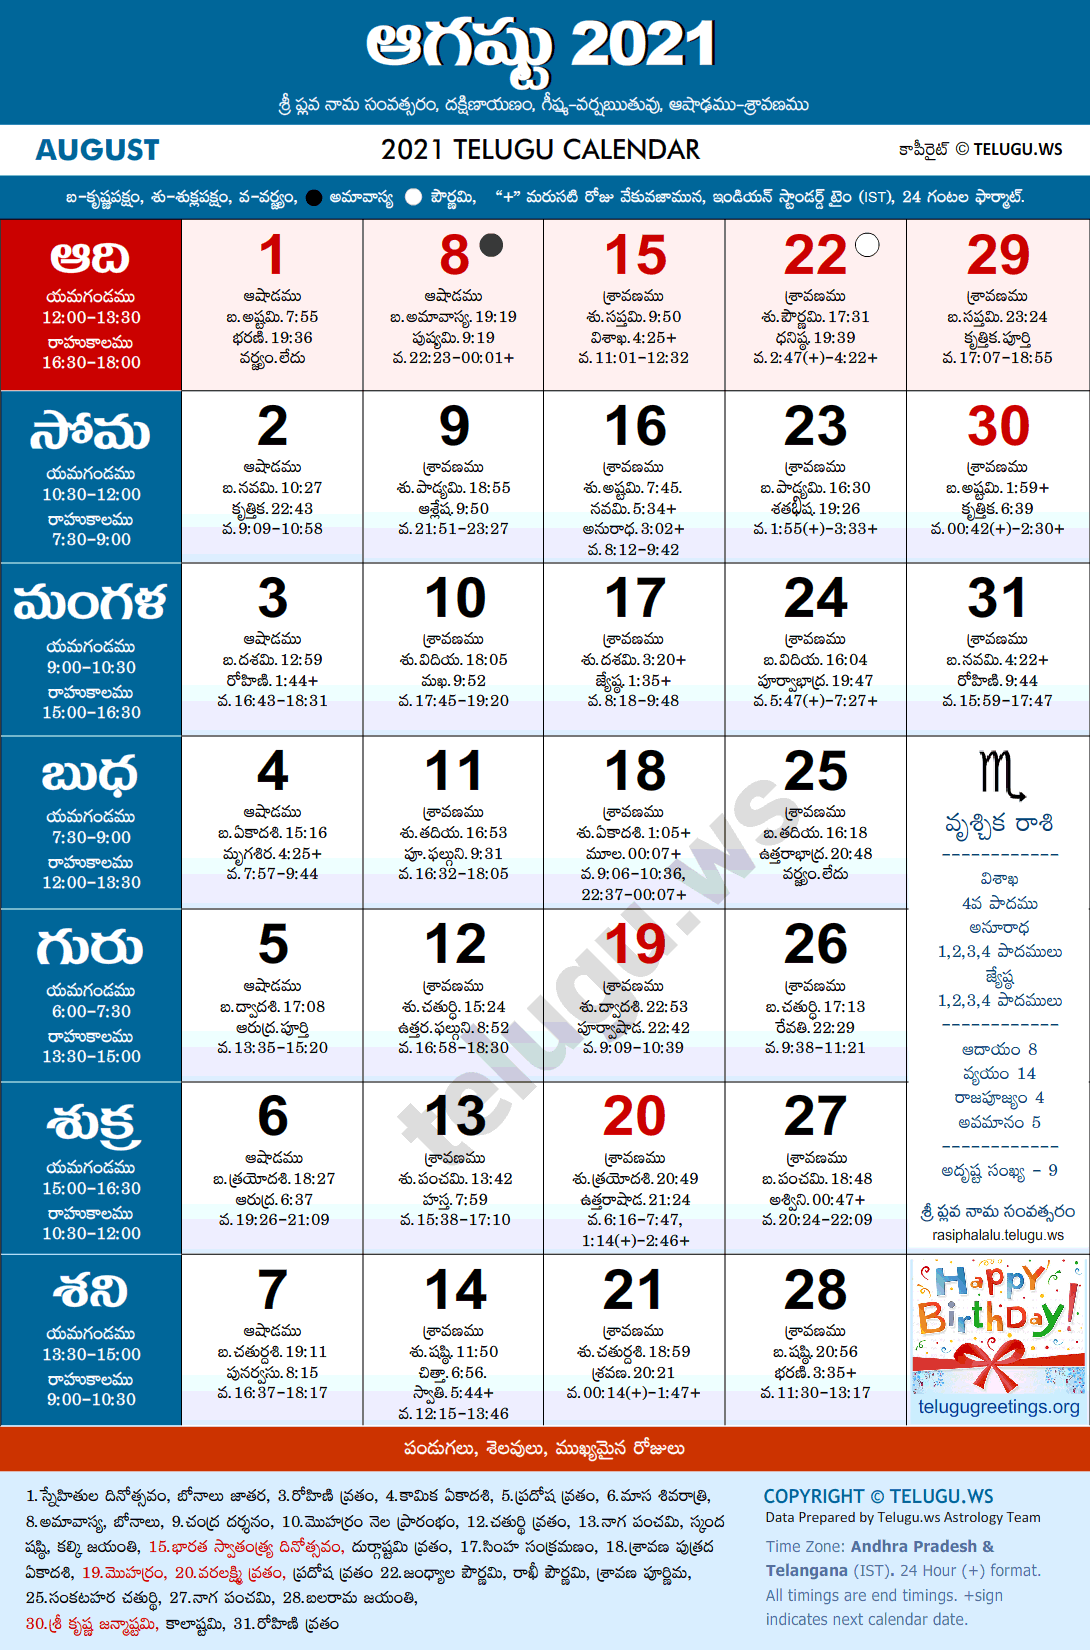 Telugu Calendar 2021 August Festivals and Holidays